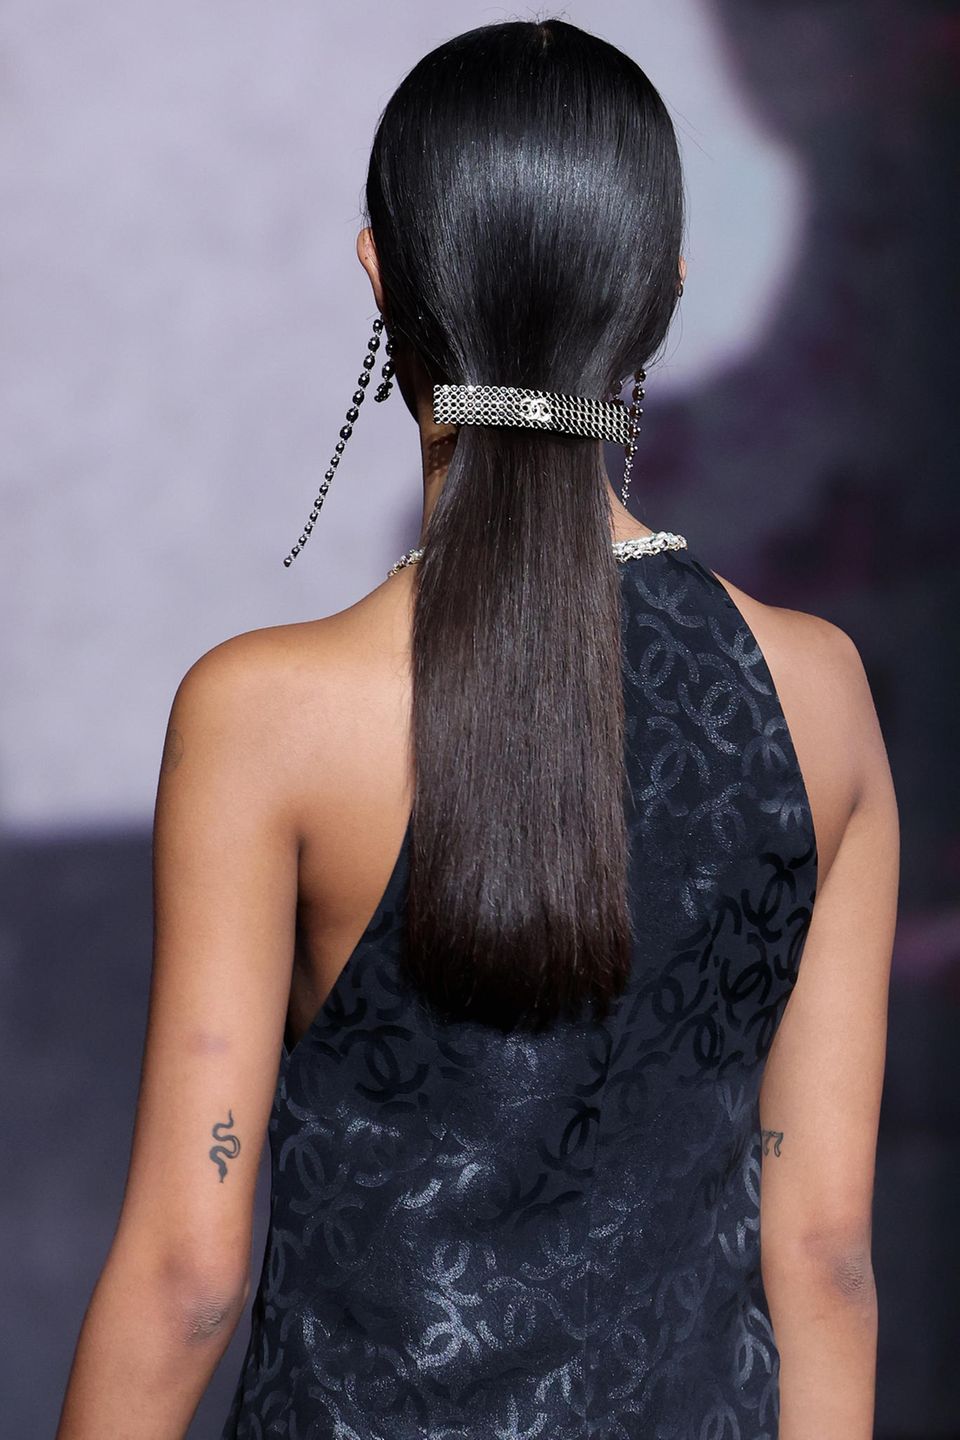 Haarspangen liegen dank Chanel wieder total im Trend